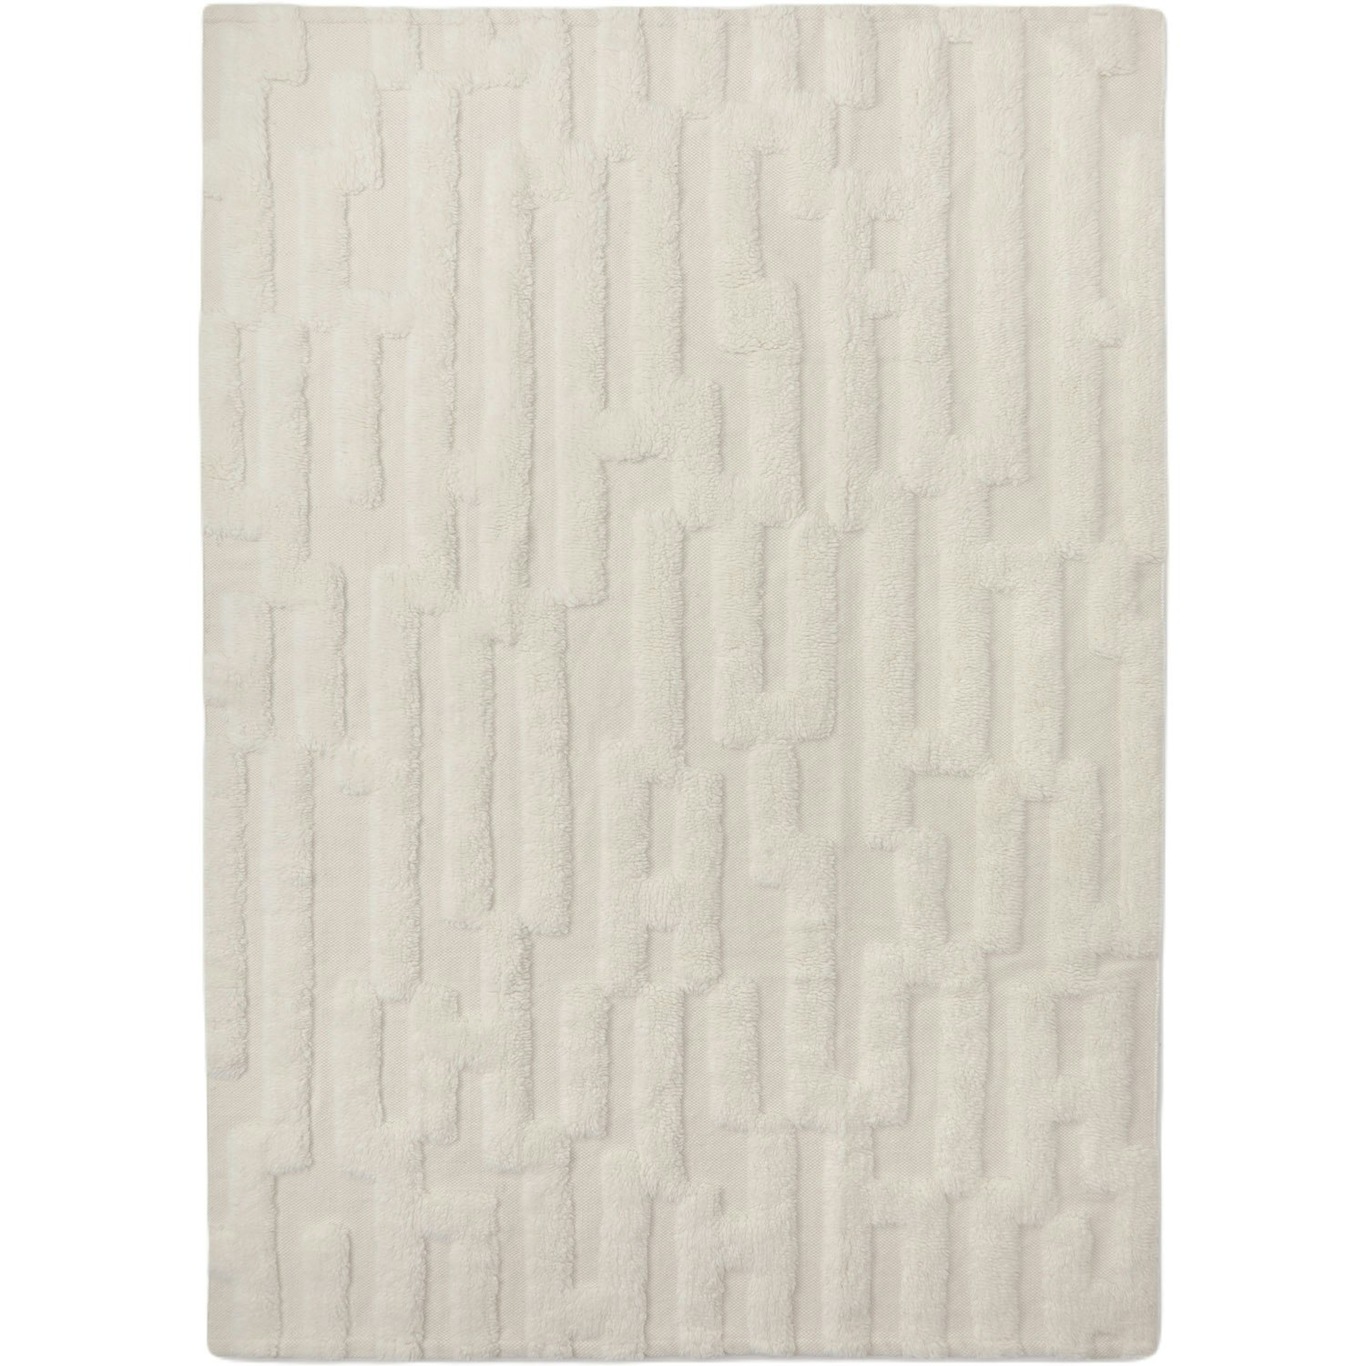 Bielke Ullteppe 280x380 cm, Off-white